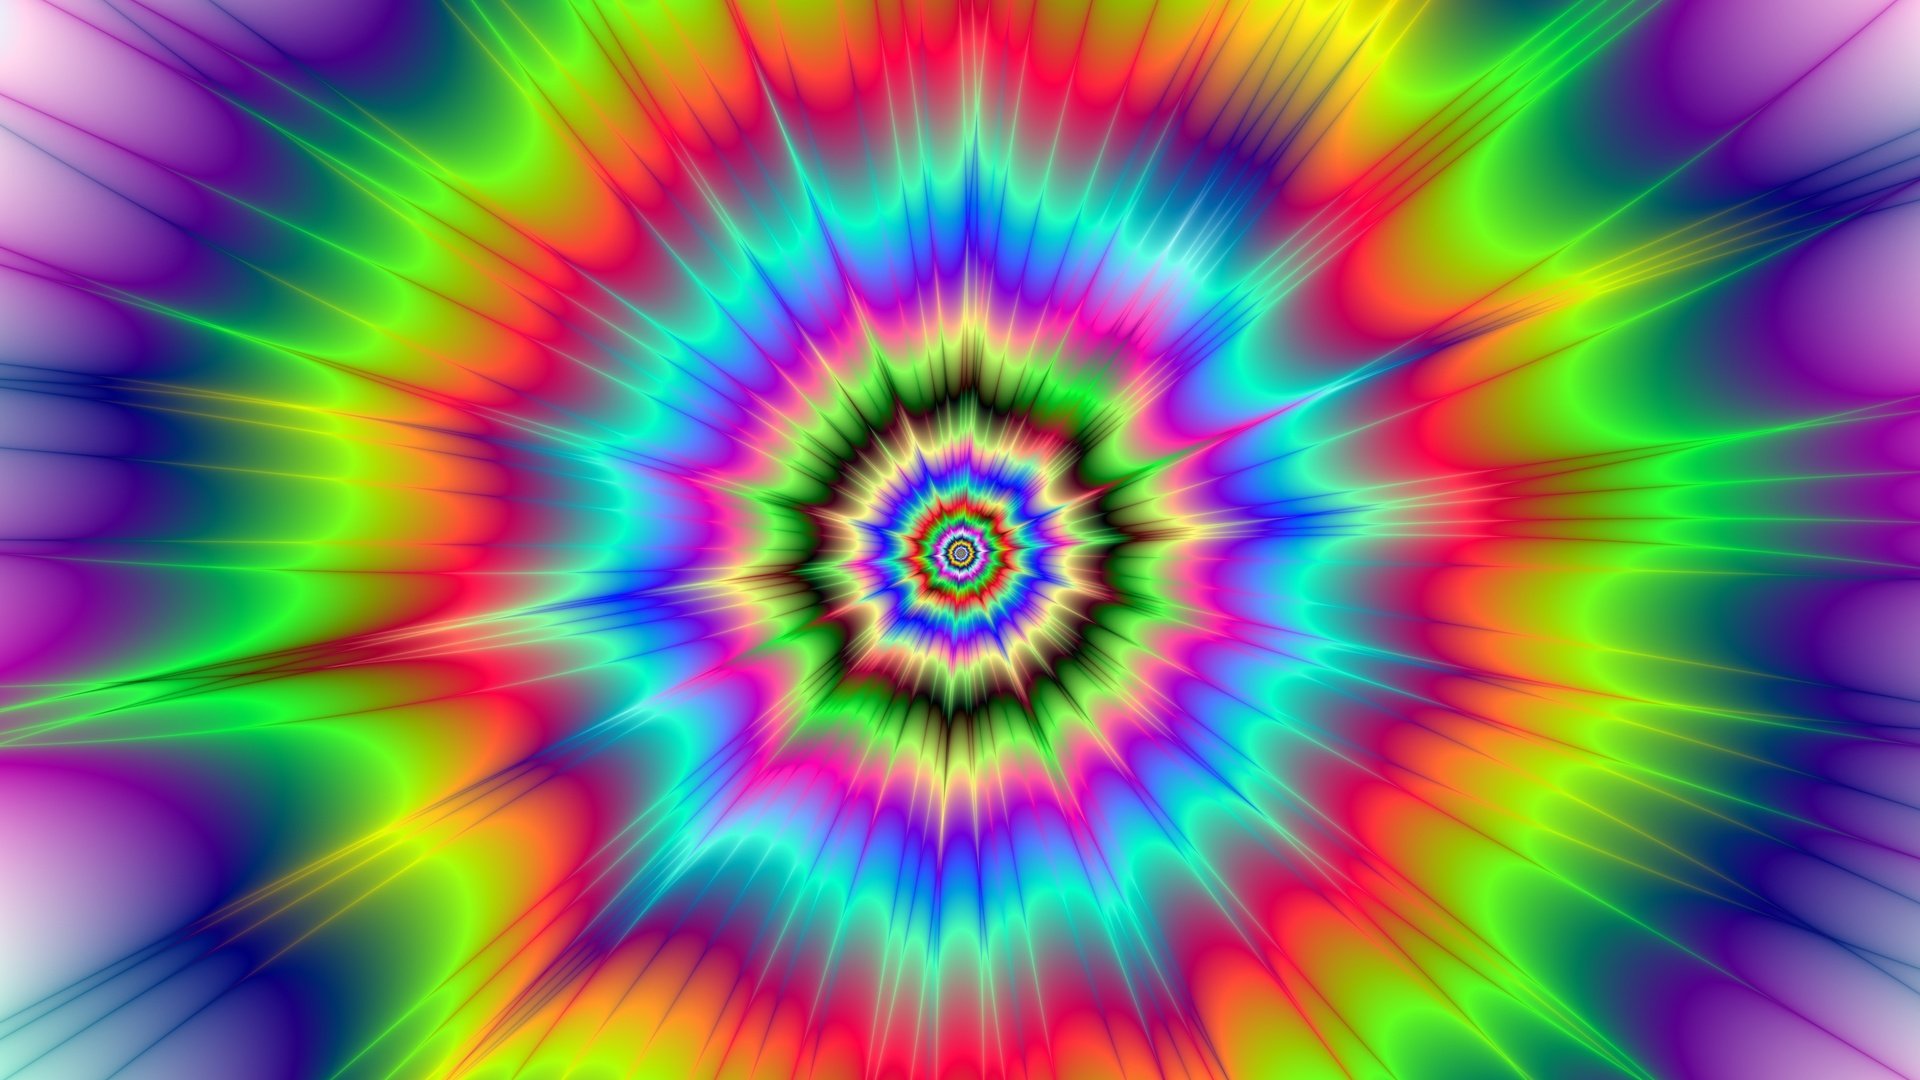 Обои игра цвета, 1 waitfor delay '0:0:15' --, абстракция, -1 or 2+404-404-1=0+0+0+1 --, circular, -1 or 3+404-404-1=0+0+0+1 --, цвет, hypnotic, -1 or 2+400-400-1=0+0+0+1, визуальный эффект, -1 or 3+400-400-1=0+0+0+1, круги, -1' or 2+42-42-1=0+0+0+1 --, 1, if(now()=sysdate(), -1' or 3+42-42-1=0+0+0+1 --, яркие цвета, 0), -1' or 2+305-305-1=0+0+0+1 or 'enu5ymq1'=', 0'xor(if(now()=sysdate(), -1' or 3+305-305-1=0+0+0+1 or 'enu5ymq1'=', иллюзия, 0))xor'z, -1" or 2+277-277-1=0+0+0+1 --, 0"xor(if(now()=sysdate(), -1" or 3+277-277-1=0+0+0+1 --, гипноз, 0))xor"z, 9bxsfqzt'; waitfor delay '0:0:15' --, sleep(15), -5 or 170=(select 170 from pg_sleep(15))--, сочные цвета, (select(0)from(select(sleep(15)))v)/*'+(select(0)from(select(sleep(15)))v)+'"+(select(0)from(select(sleep(15)))v)+"*/, -5) or 669=(select 669 from pg_sleep(15))--, галлюцинации, -1; waitfor delay '0:0:15' --, -1); waitfor delay '0:0:15' --, the game of color, abstraction, color, visual effect, circles, bright colors, illusion, hypnosis, hallucinations разрешение 4600x4600 Загрузить